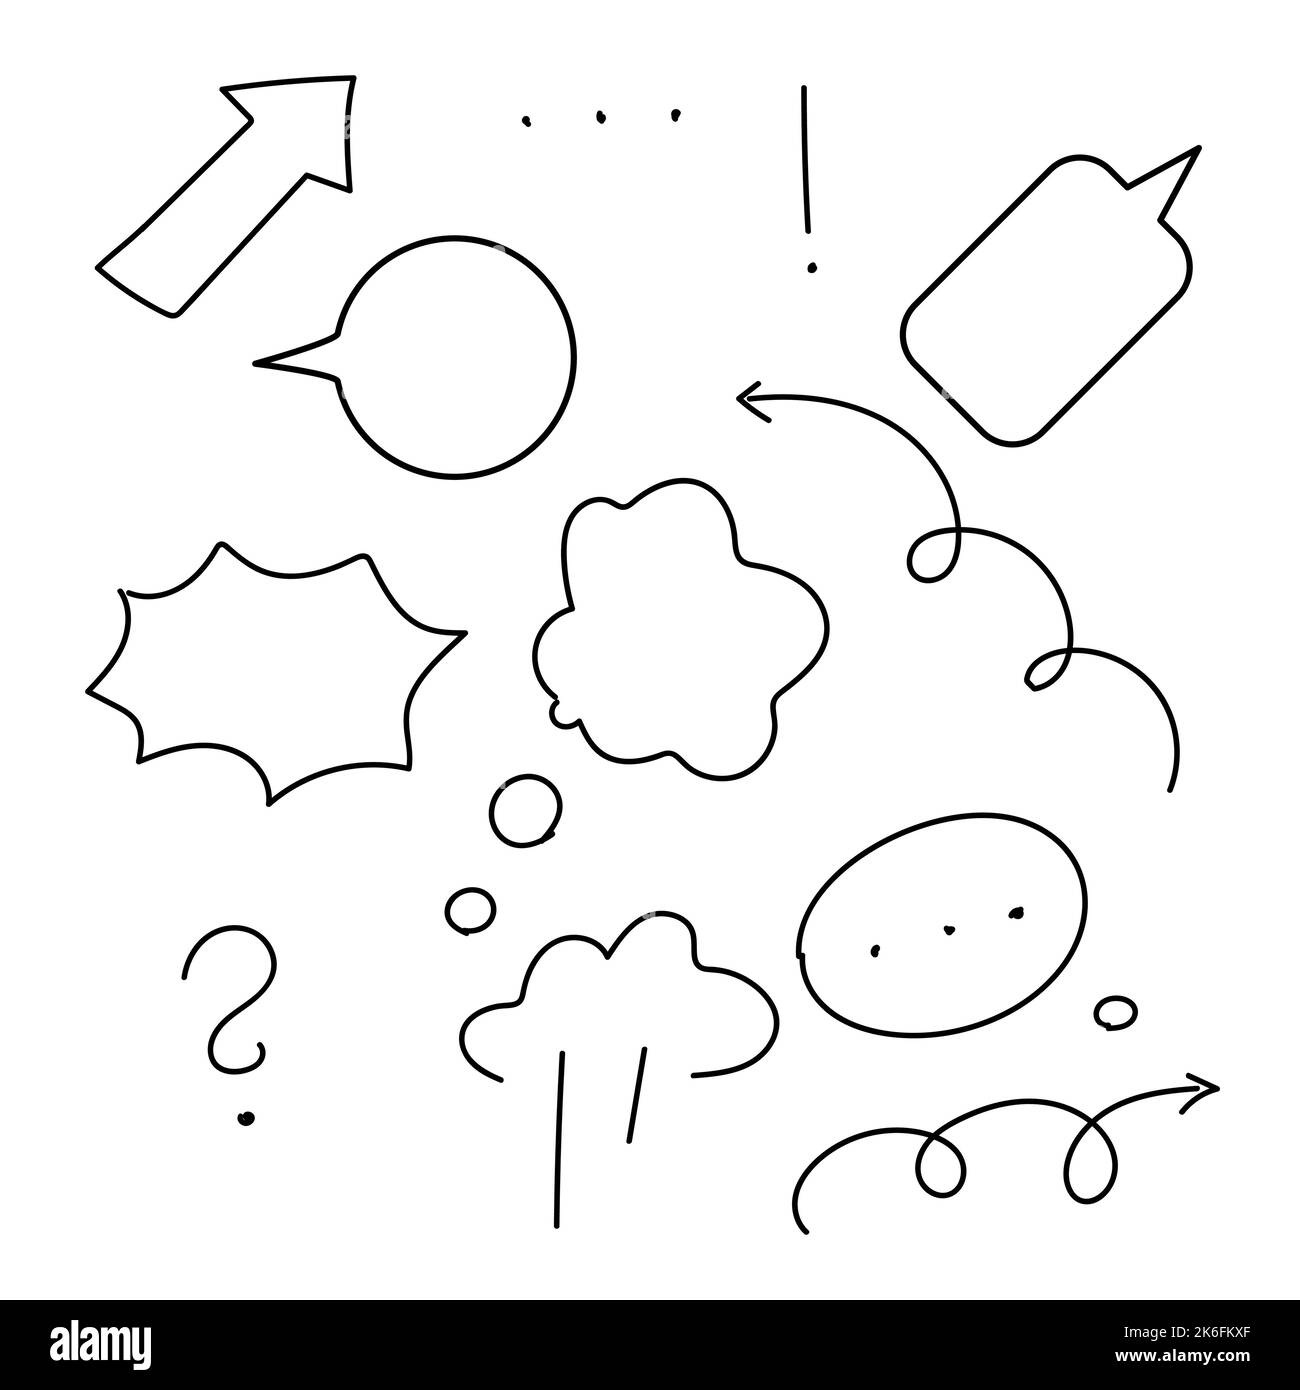 doodle von Symbolen für Gespräche. Vektorgrafiken Stock Vektor